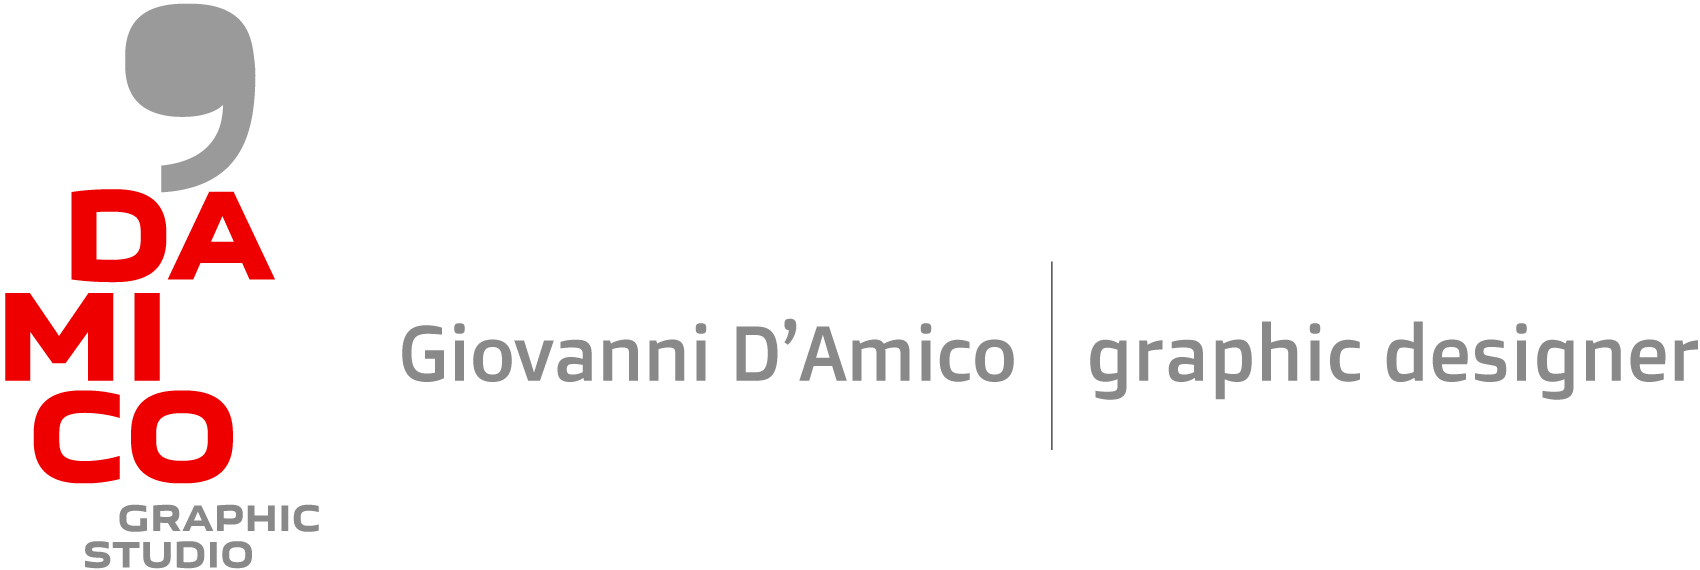 D'Amico Graphic Studio - Giovanni D'Amico - Studio grafico a Frosinone - Siti Internet e servizi Web - Graphic design, packaging, editoria e fotografia